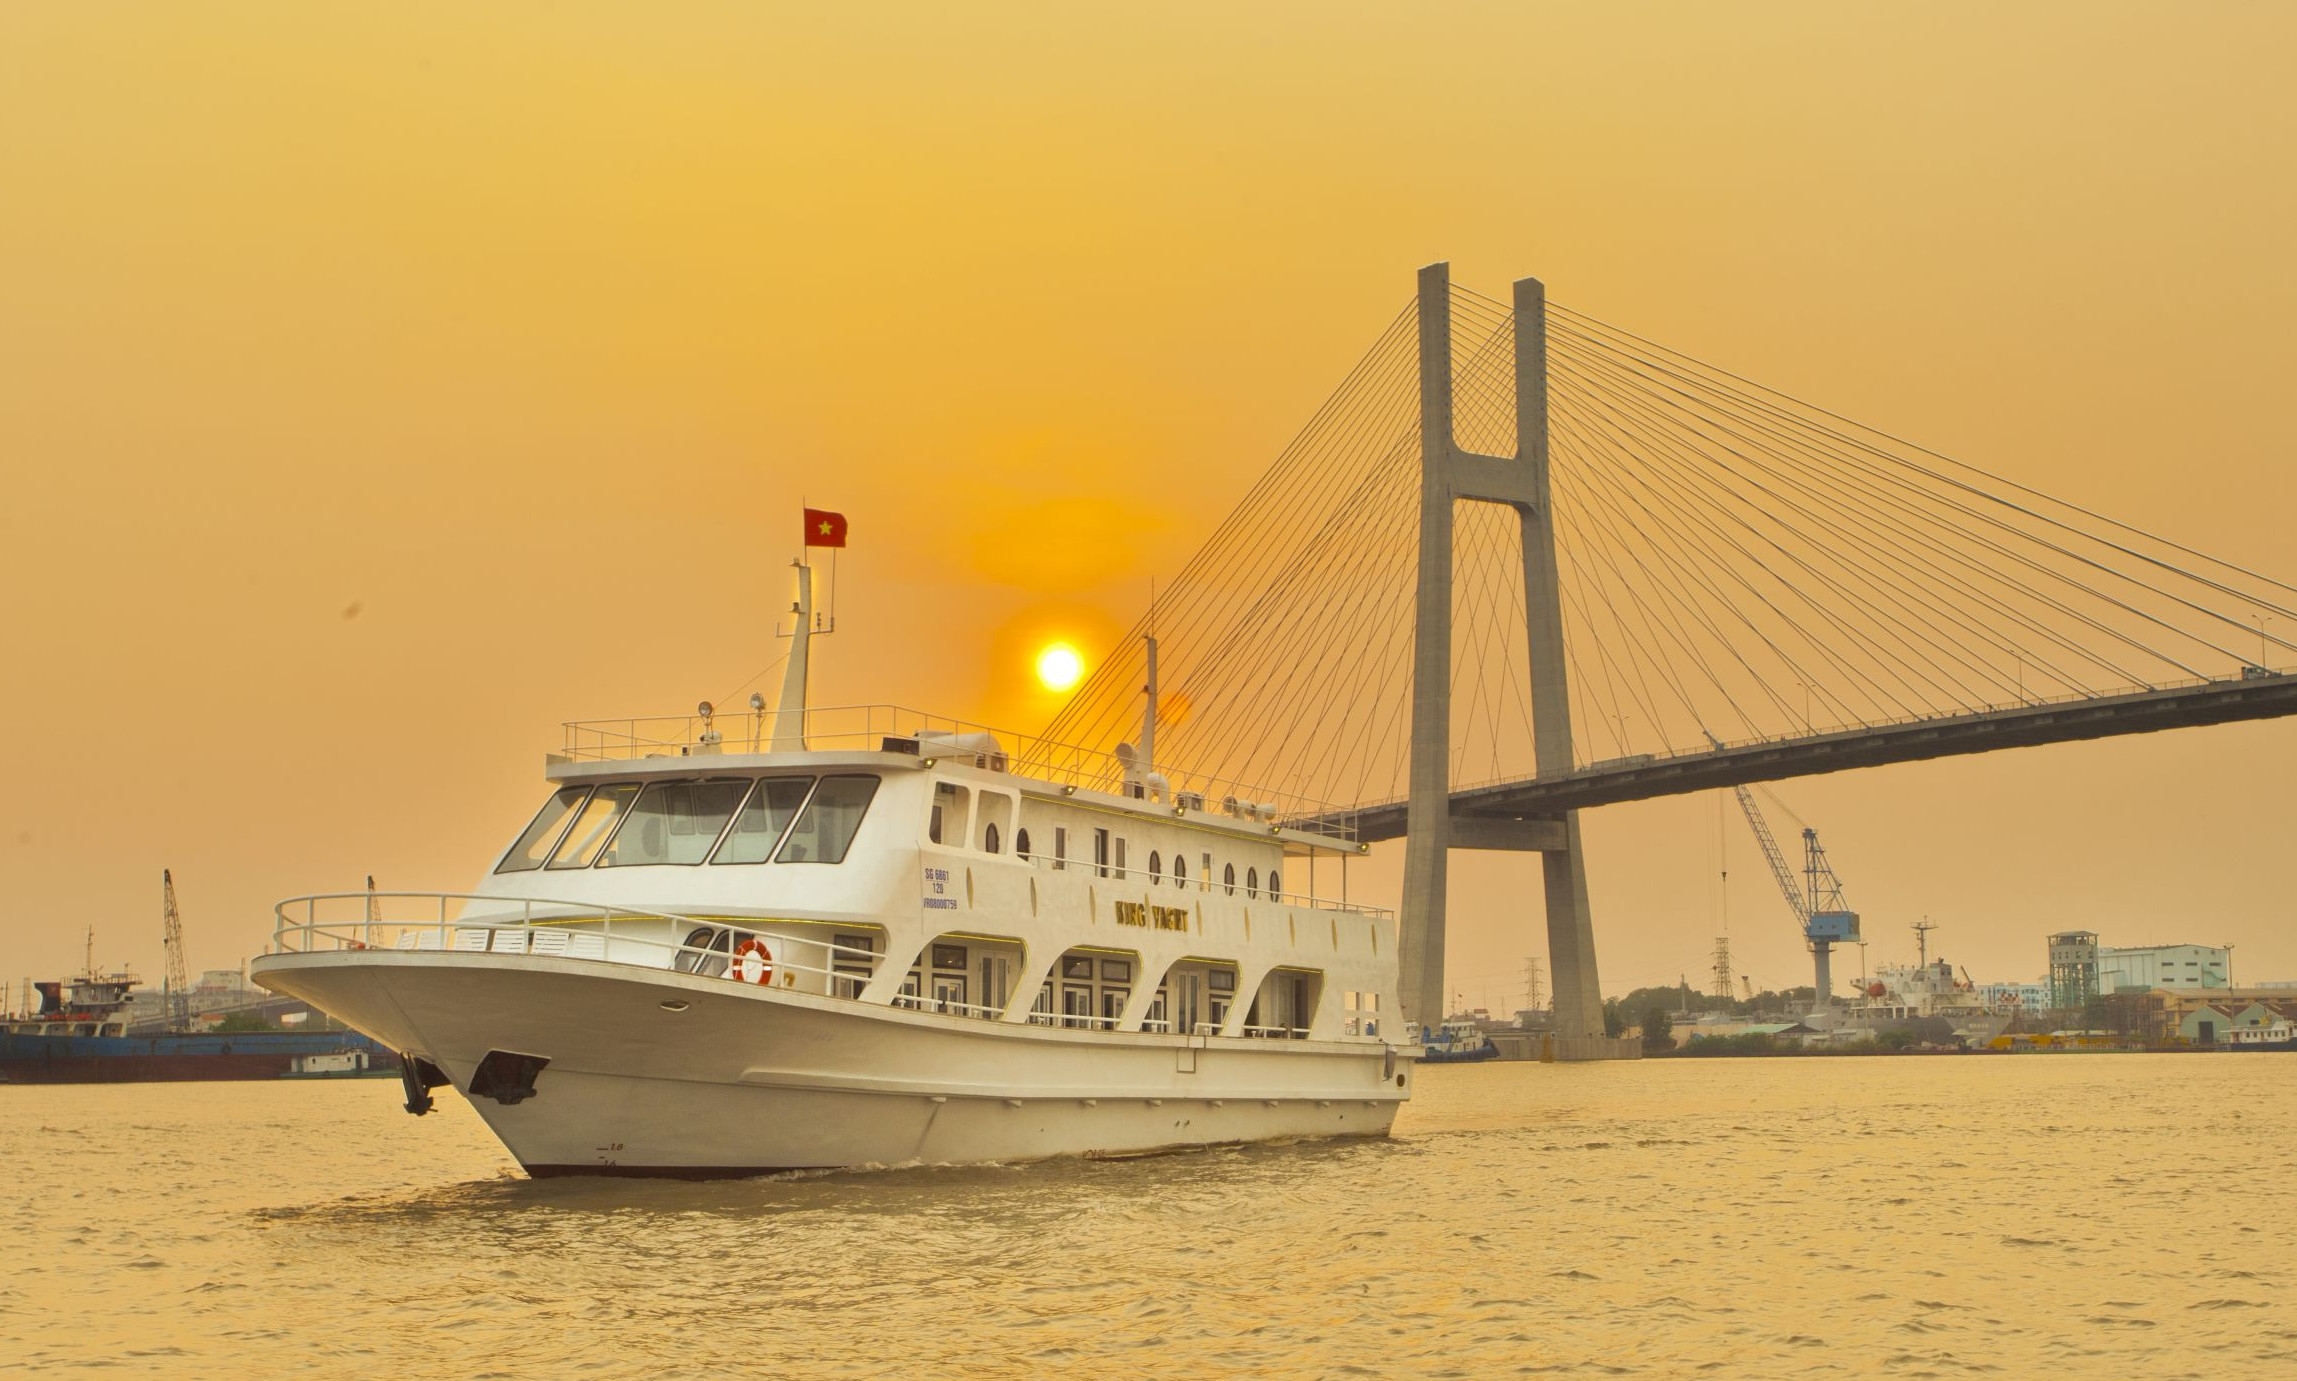 Du thuyền King Yacht - Thoáng vi vu giữa Sài Gòn hoa lệ